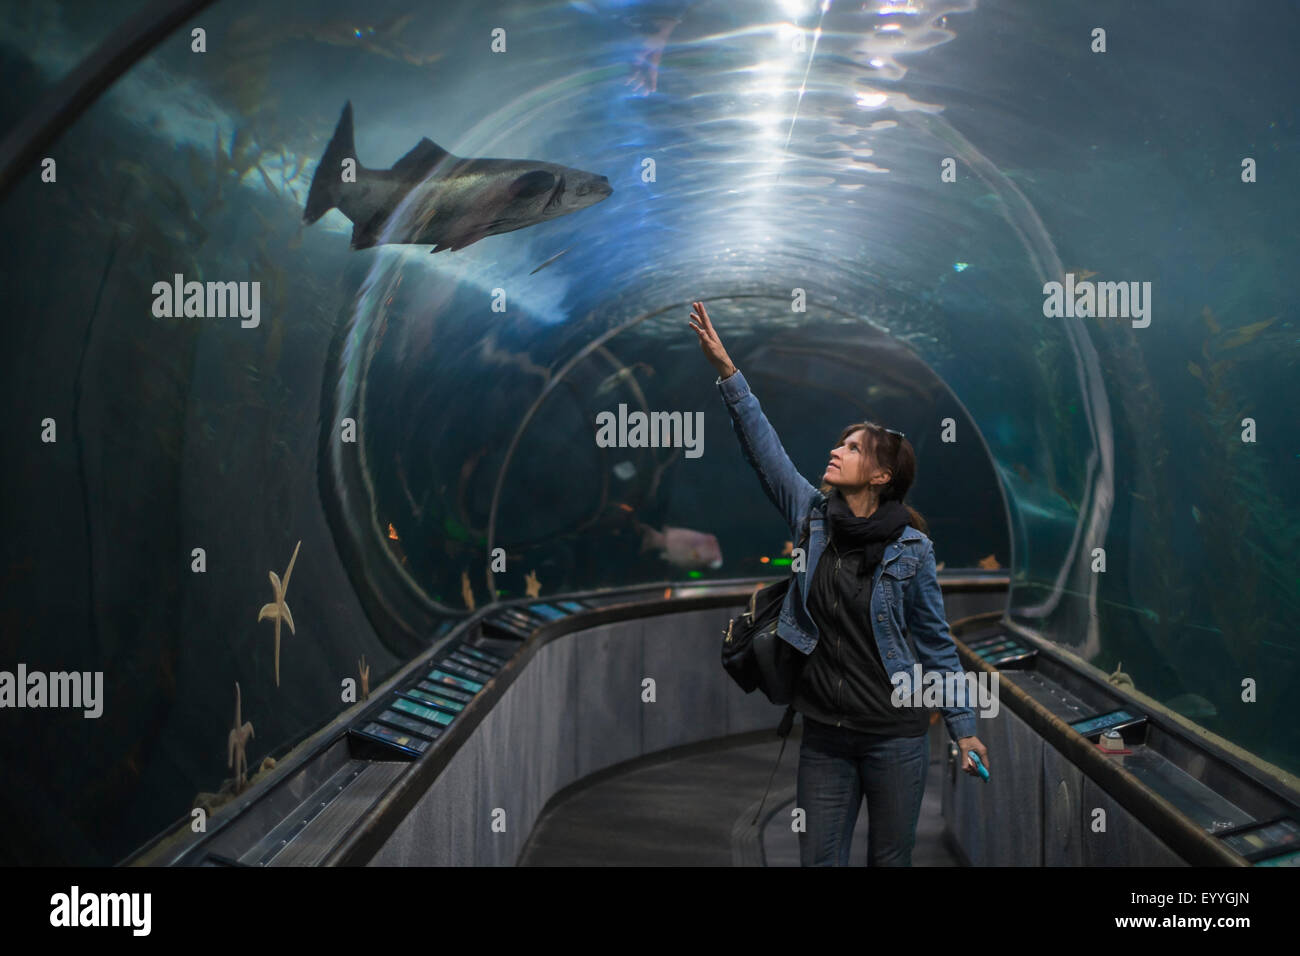 Caucasian woman admiring shark in aquarium tunnel Stock Photo